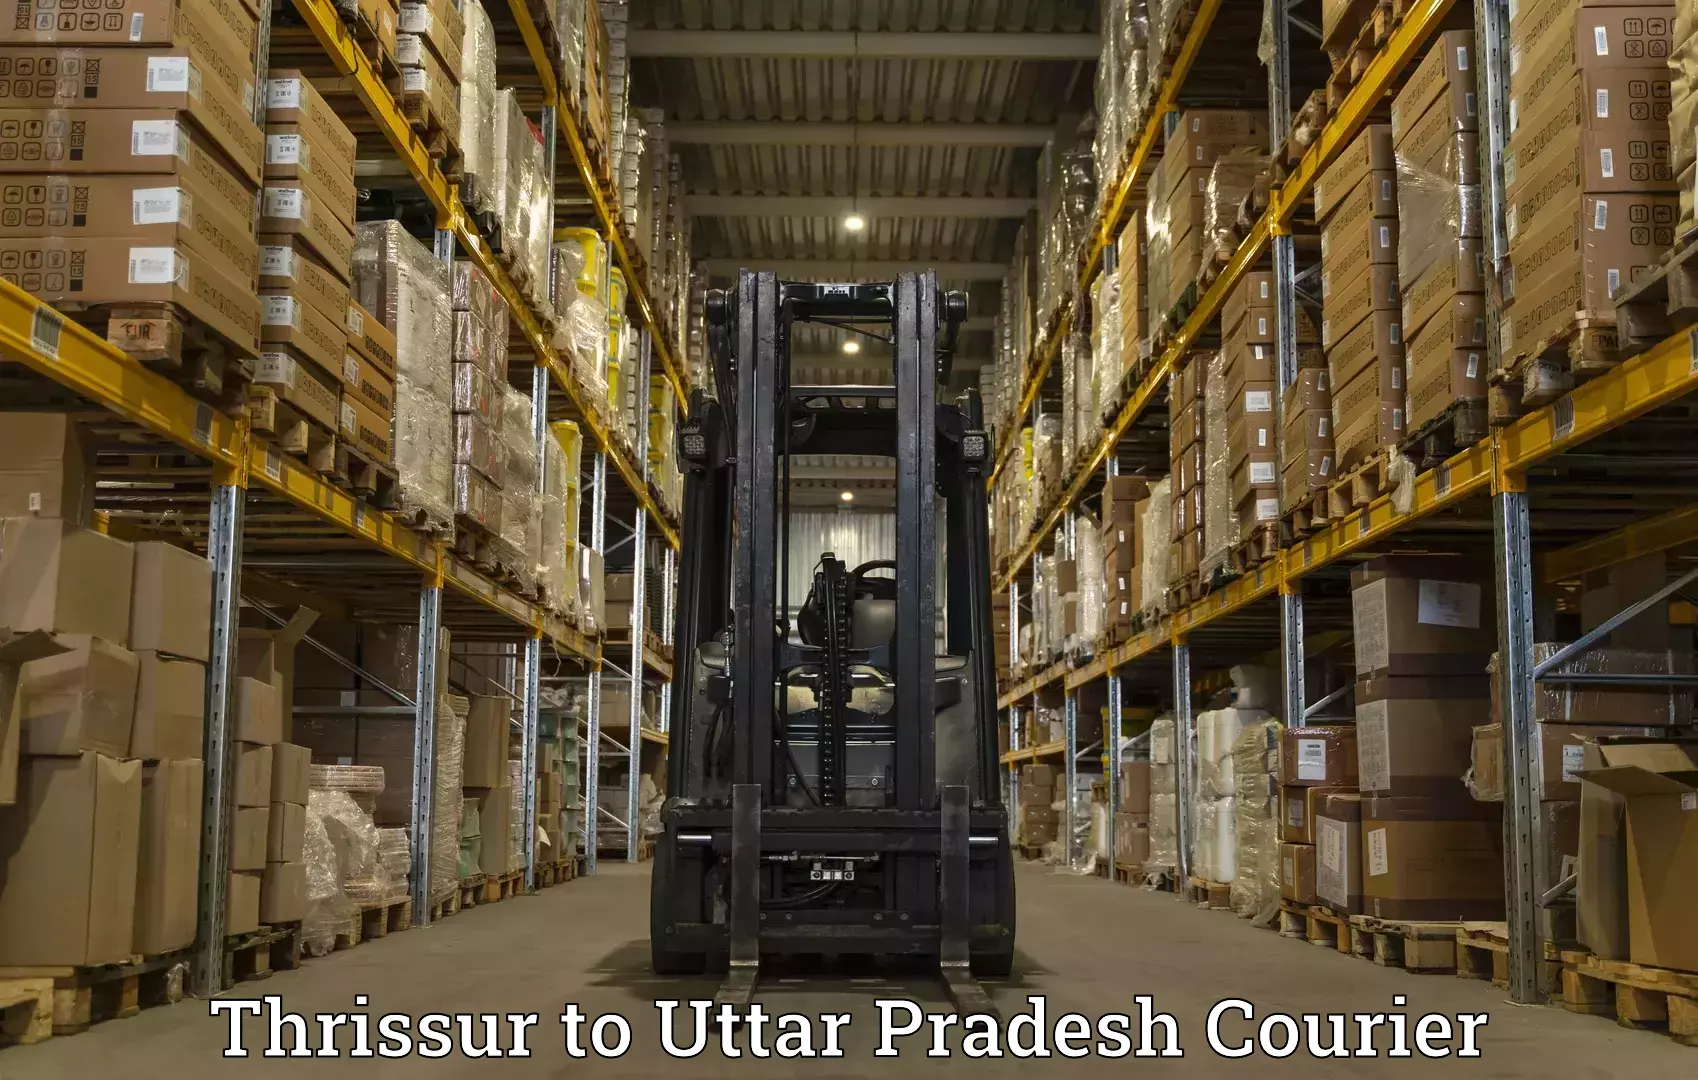 International parcel service Thrissur to Uttar Pradesh